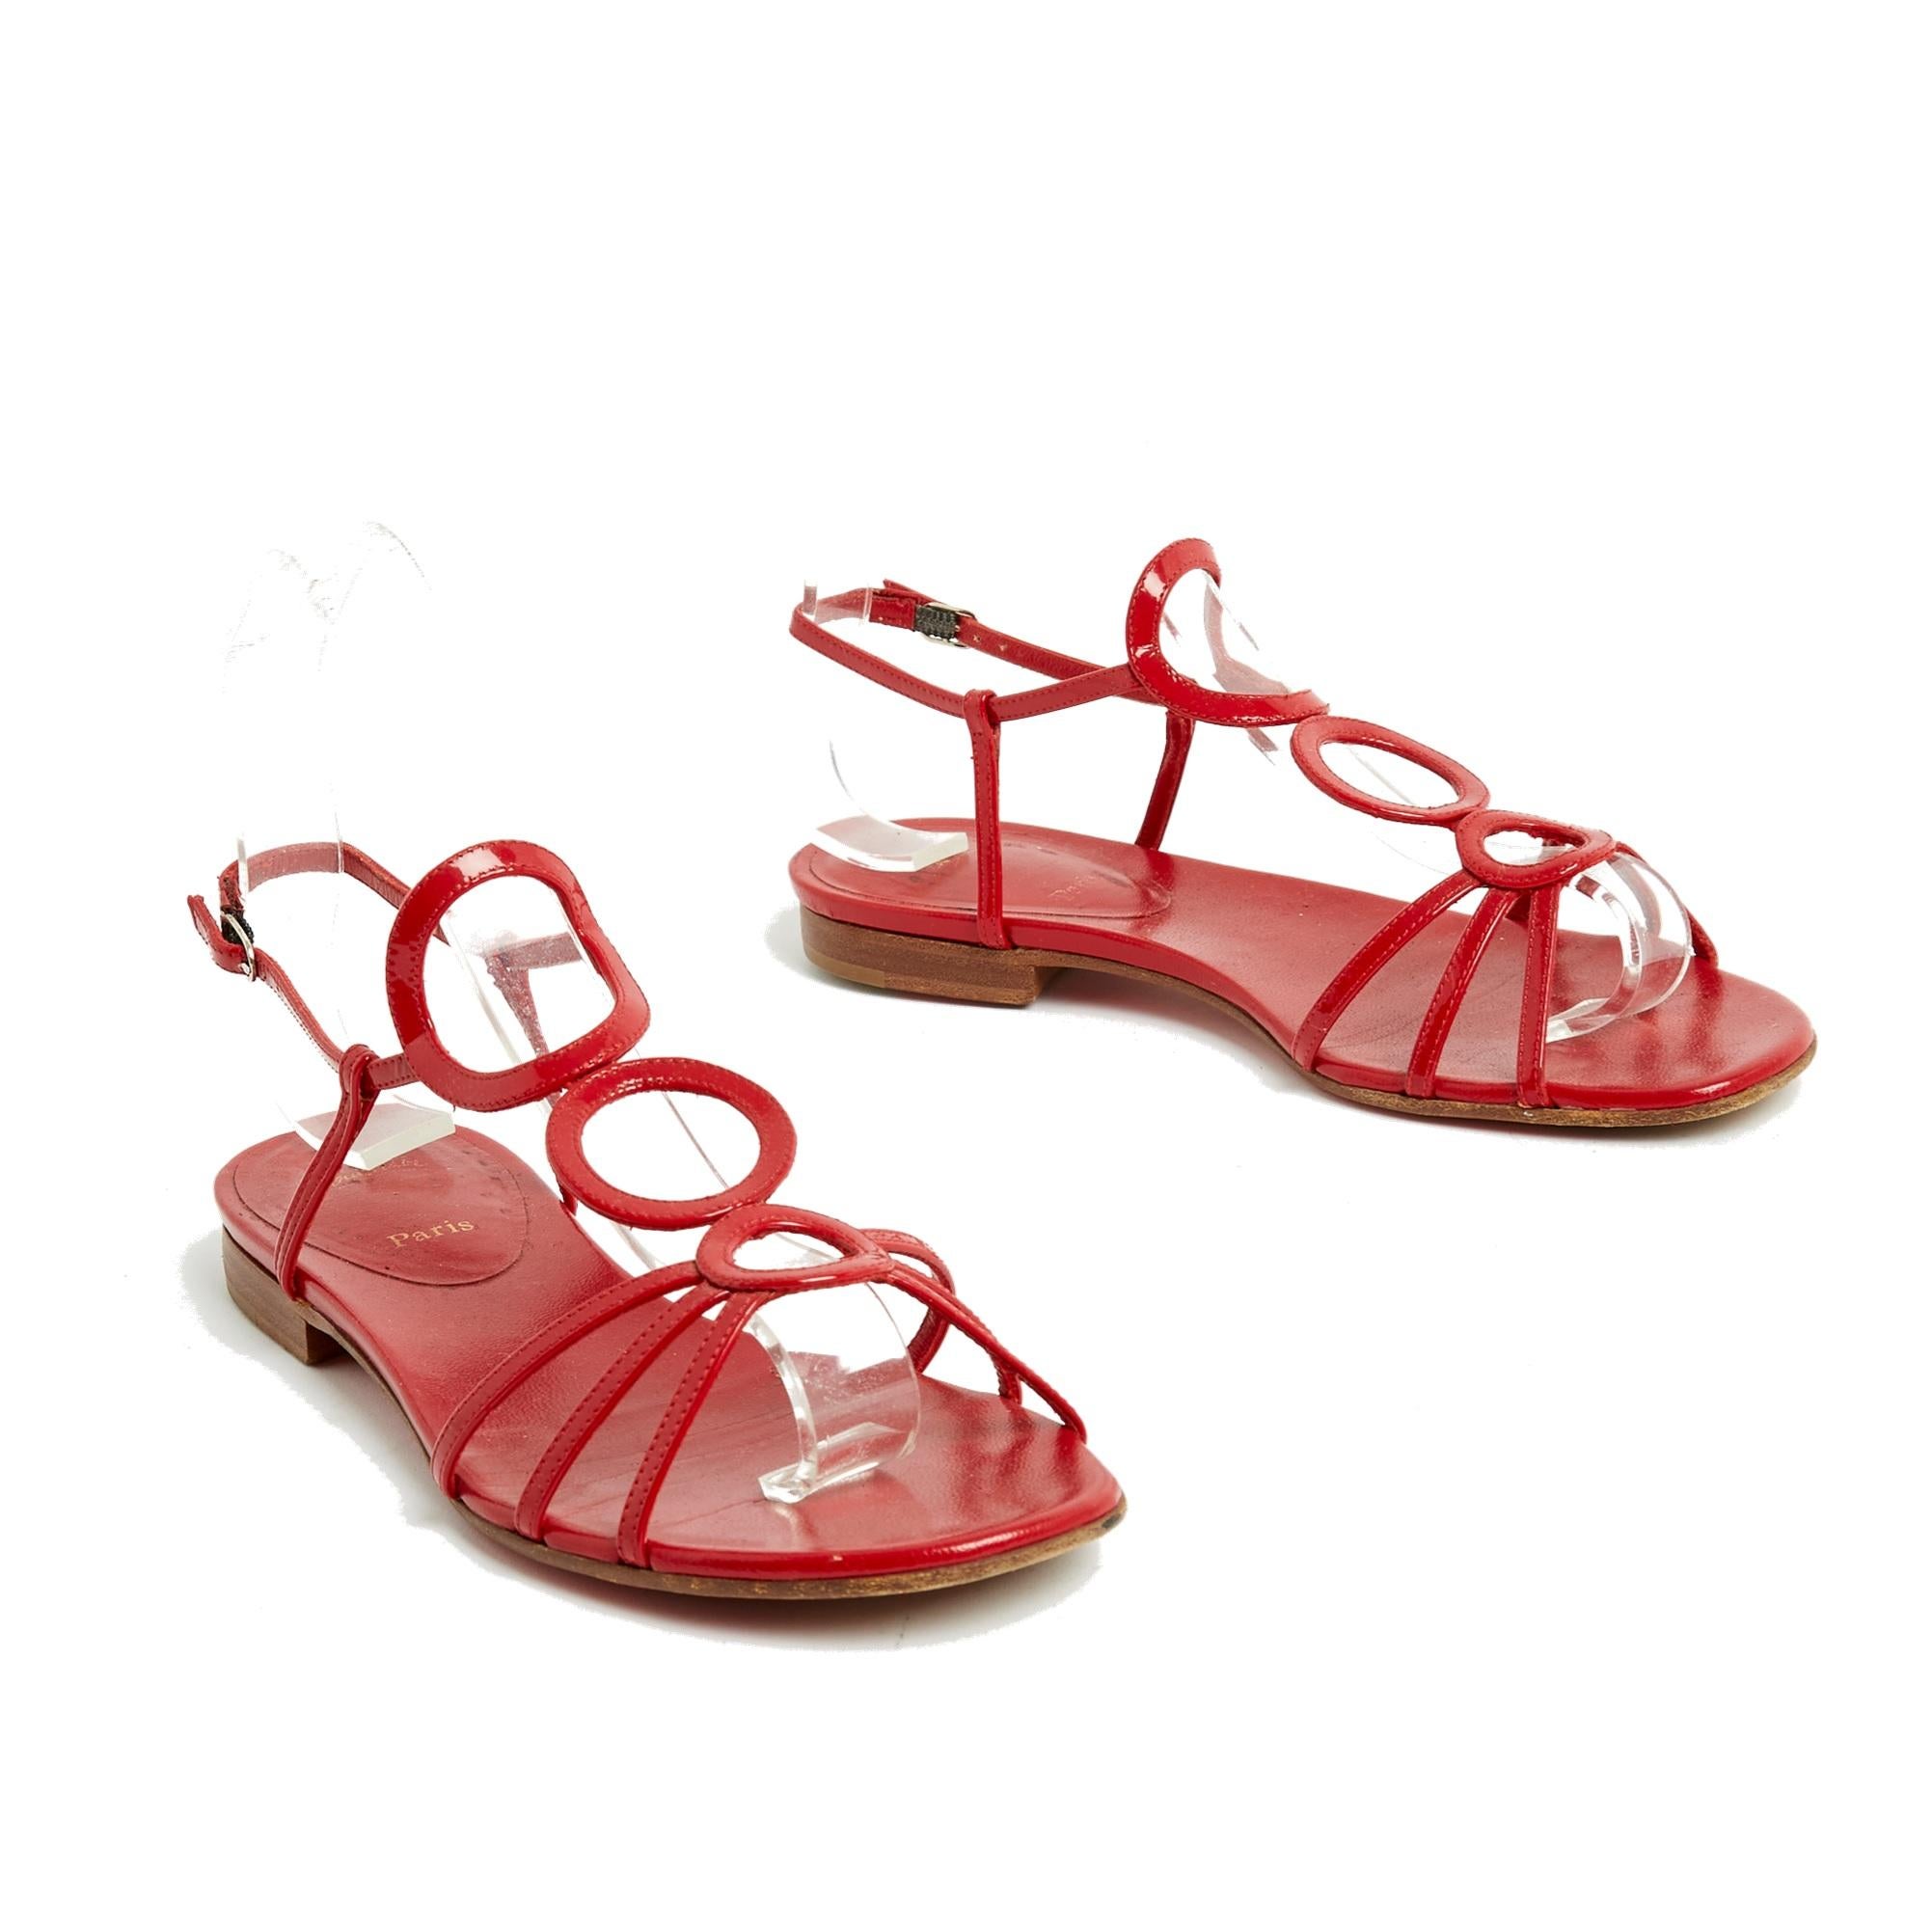 Sandales plates Christian Louboutin modèle Aplarona en cuir verni rouge avec fines lanières en forme de cercle sur le dessus du pied. Taille EU37.5 ou UK 4.5 et US7. Les sandales ont été portées mais seule la semelle est marquée. Elles sont